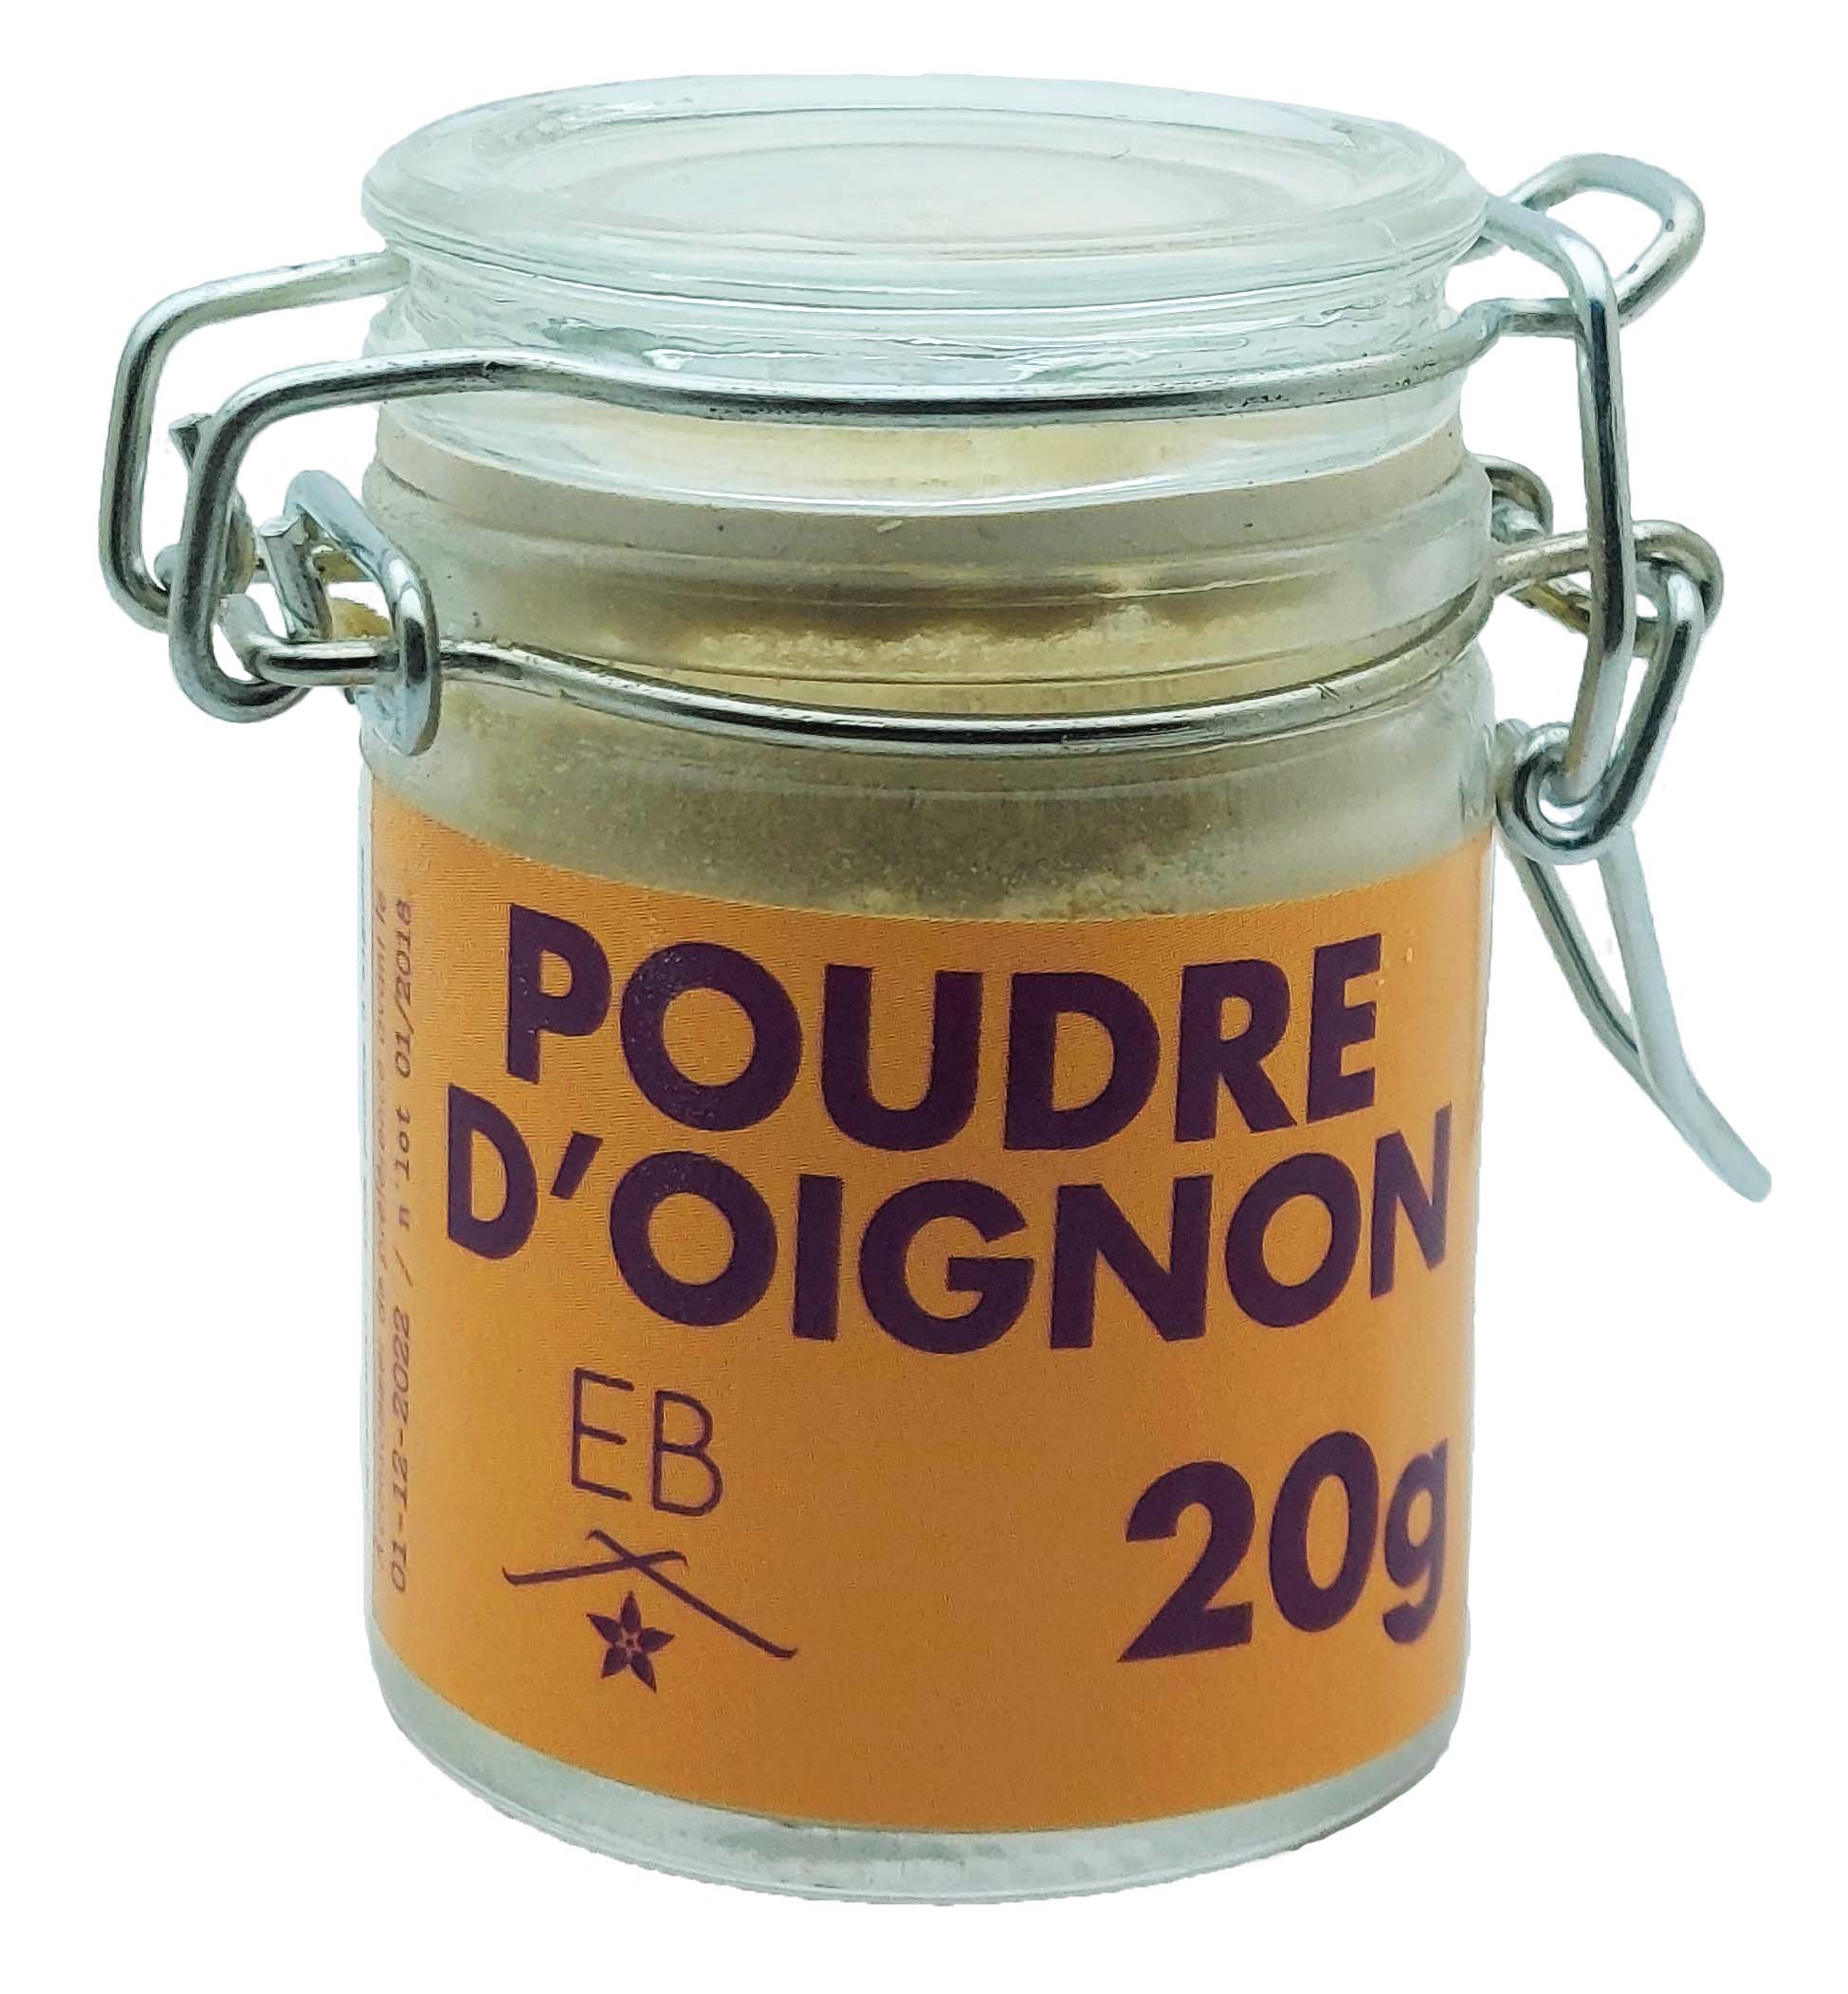 Excellence Bourbon : Poudre d'Oignon – Excellence Bourbon